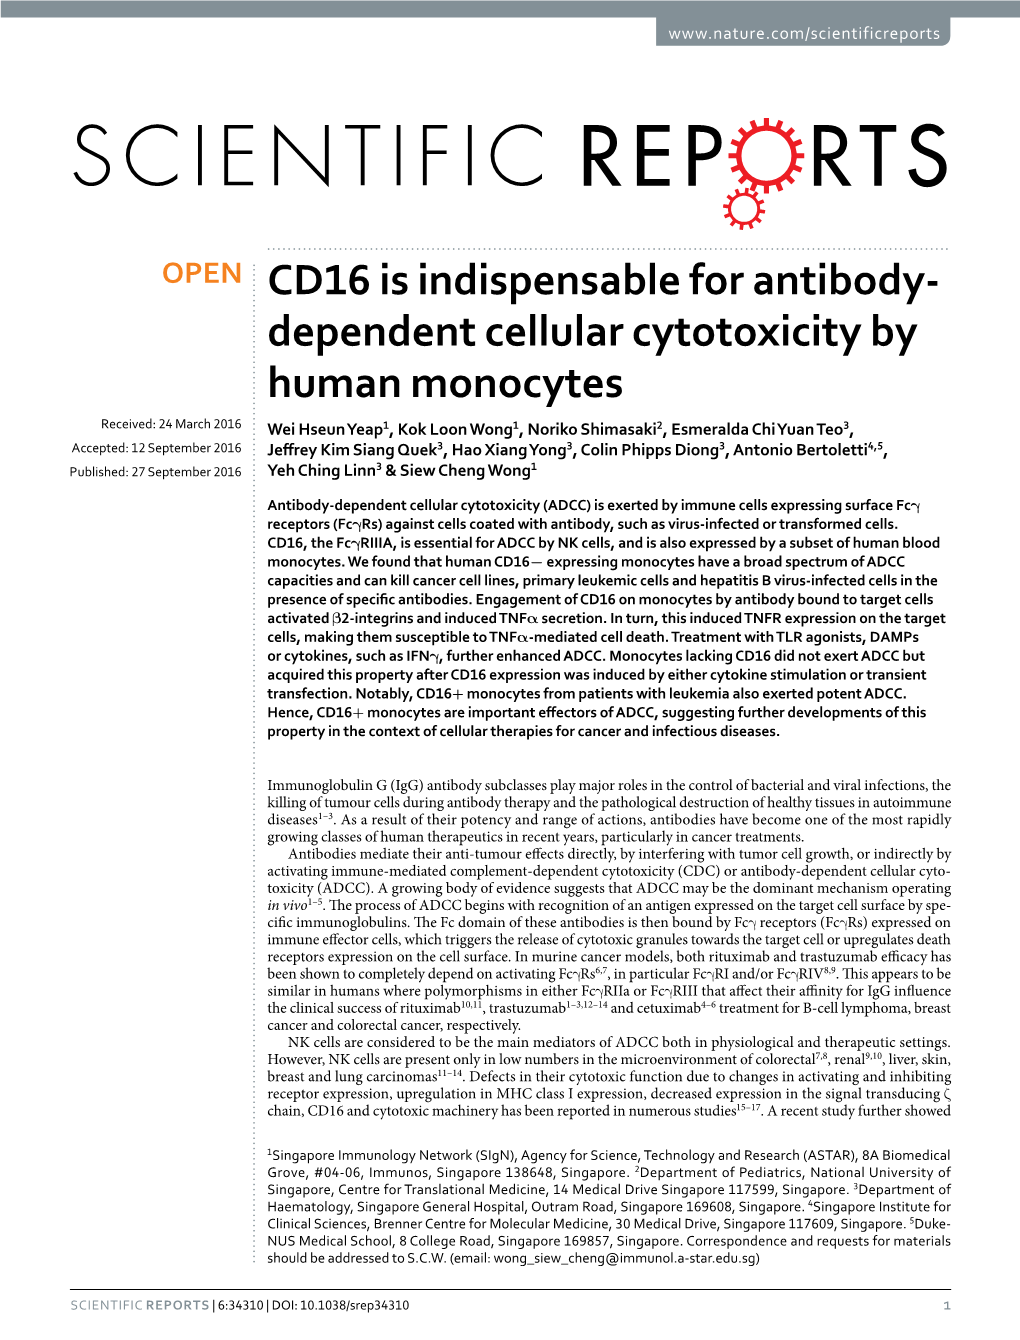 Dependent Cellular Cytotoxicity by Human Monocytes